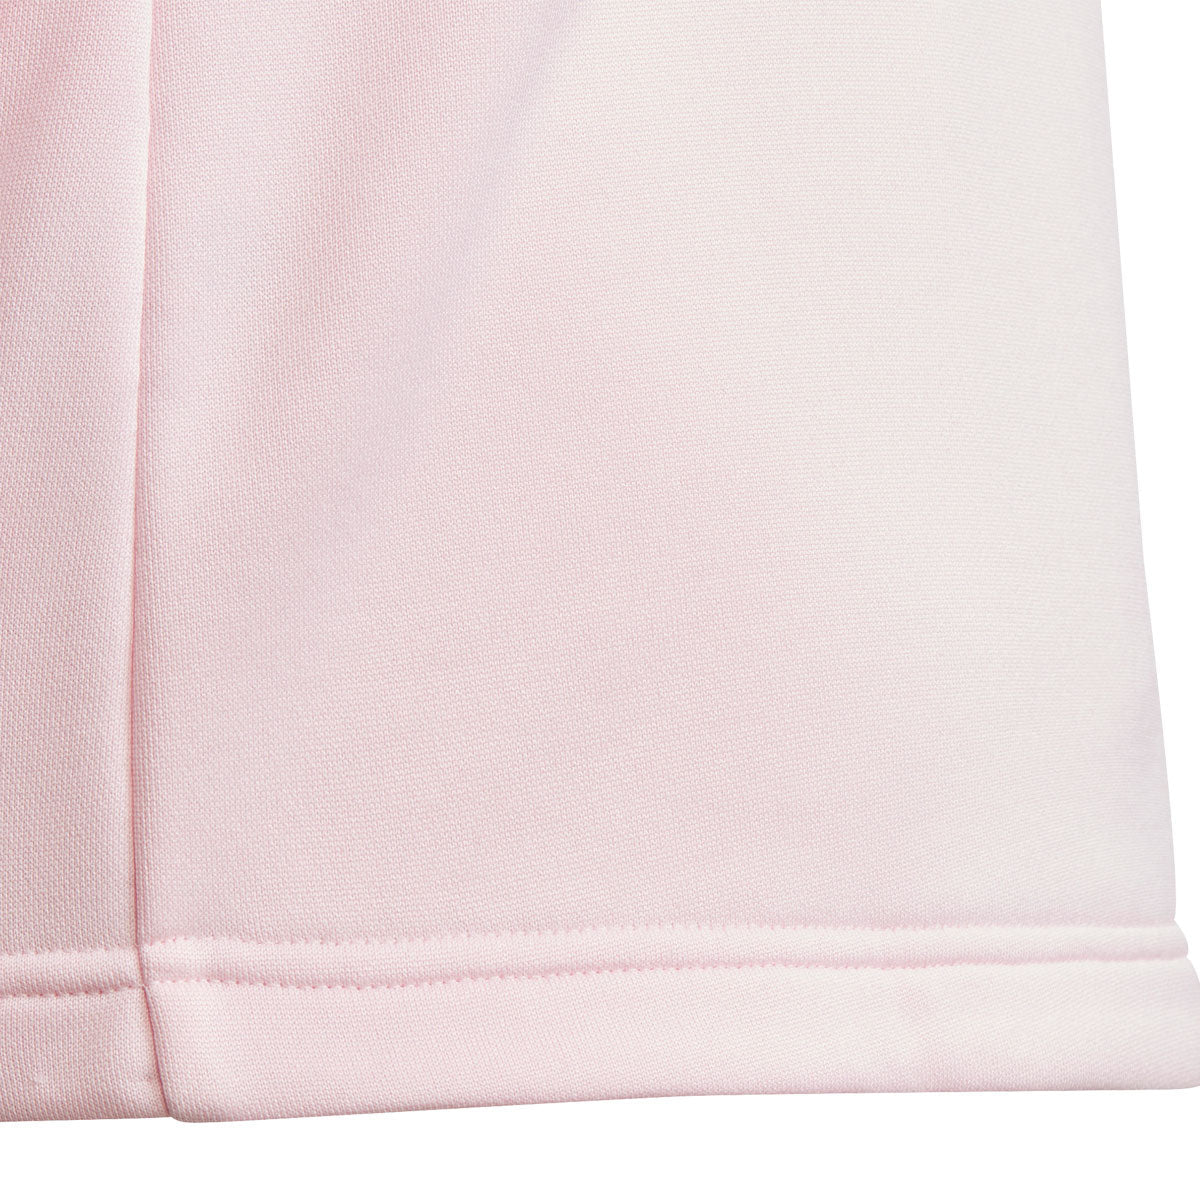 adidas 3 Stripe Essentials Full Zip Jacket - Girls - Cloud Pink/White